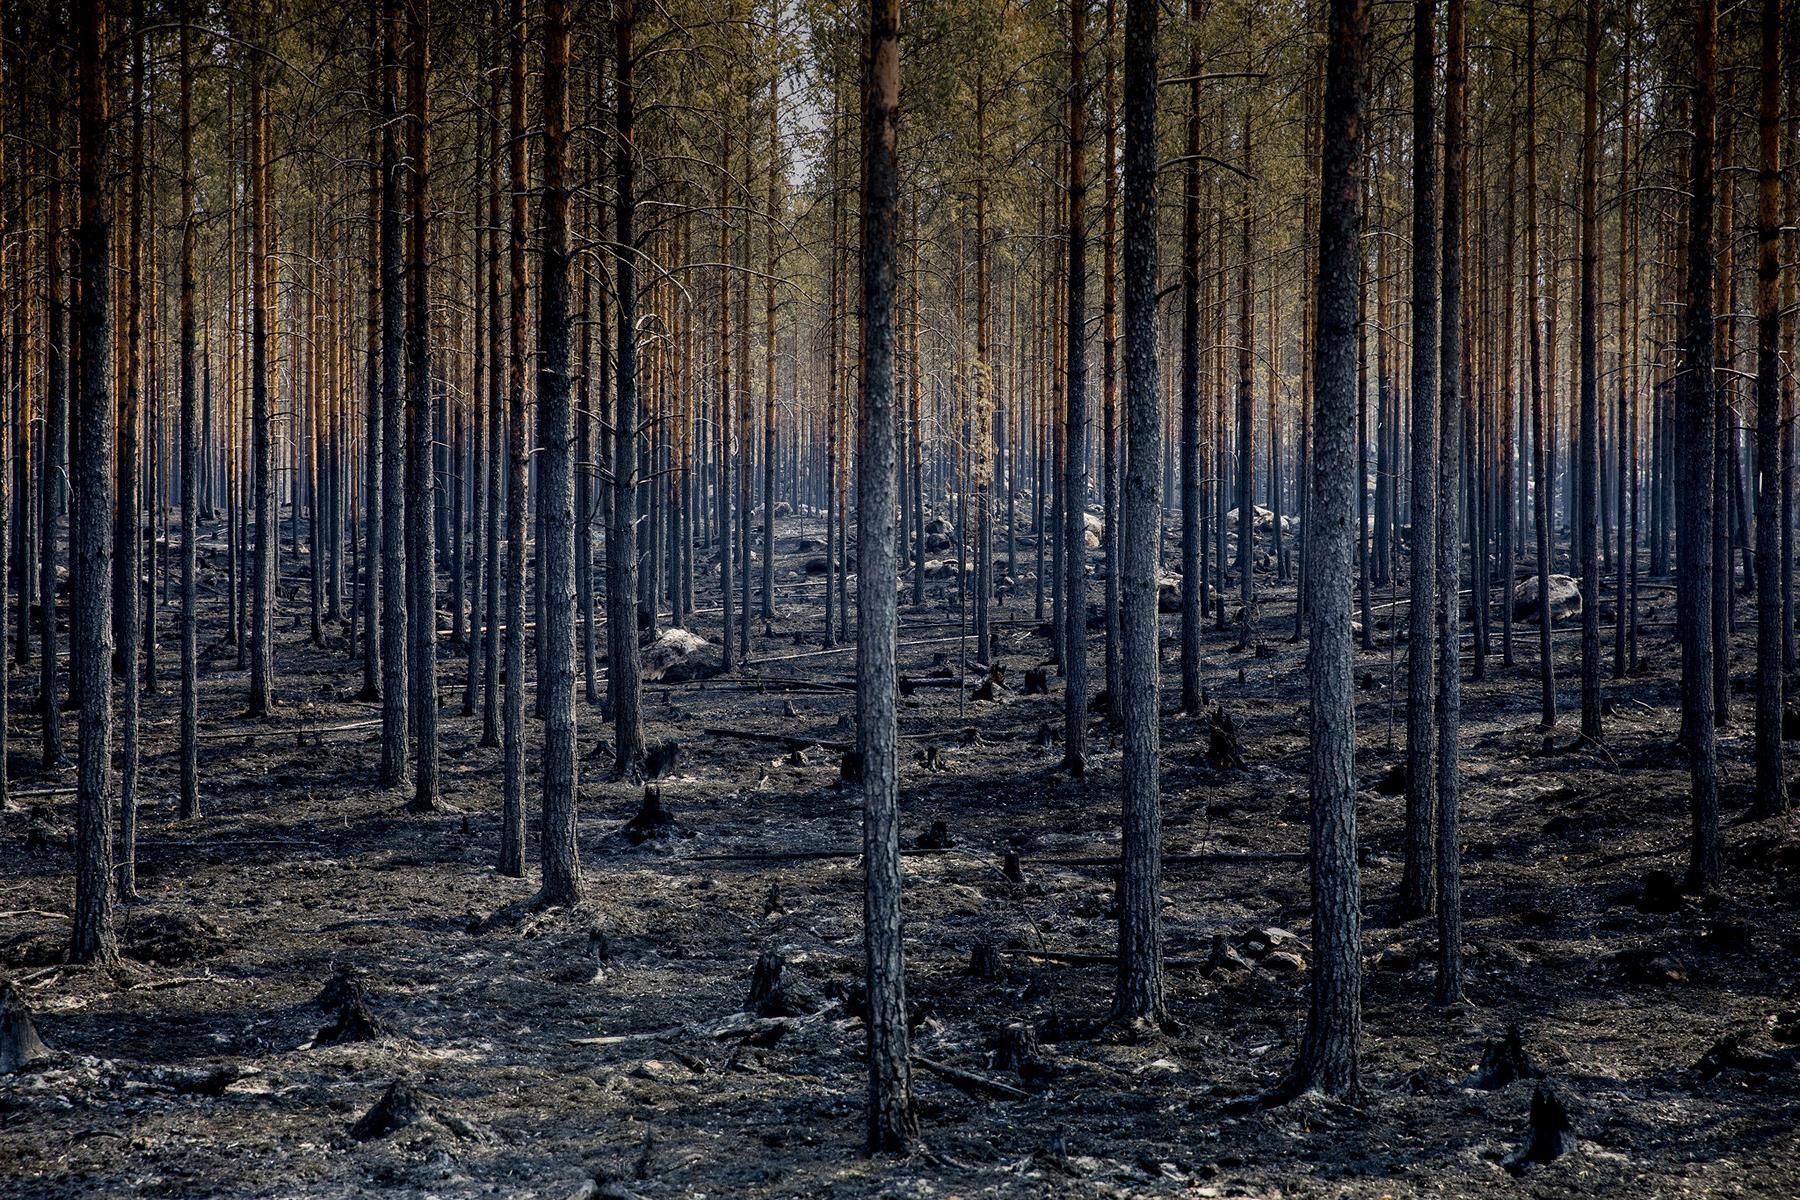 С изменением климата лесные пожары участились и тушить их становится сложнее. Основной причиной возгораний является человеческий фактор. Так, по информации BBC в 2018 году в Швеции произошли лесные пожары, которые нанесли ущерб хозяйству на сумму 600 млн шведских крон (51 млн евро) © European Union (photo by Pavel Koubek)